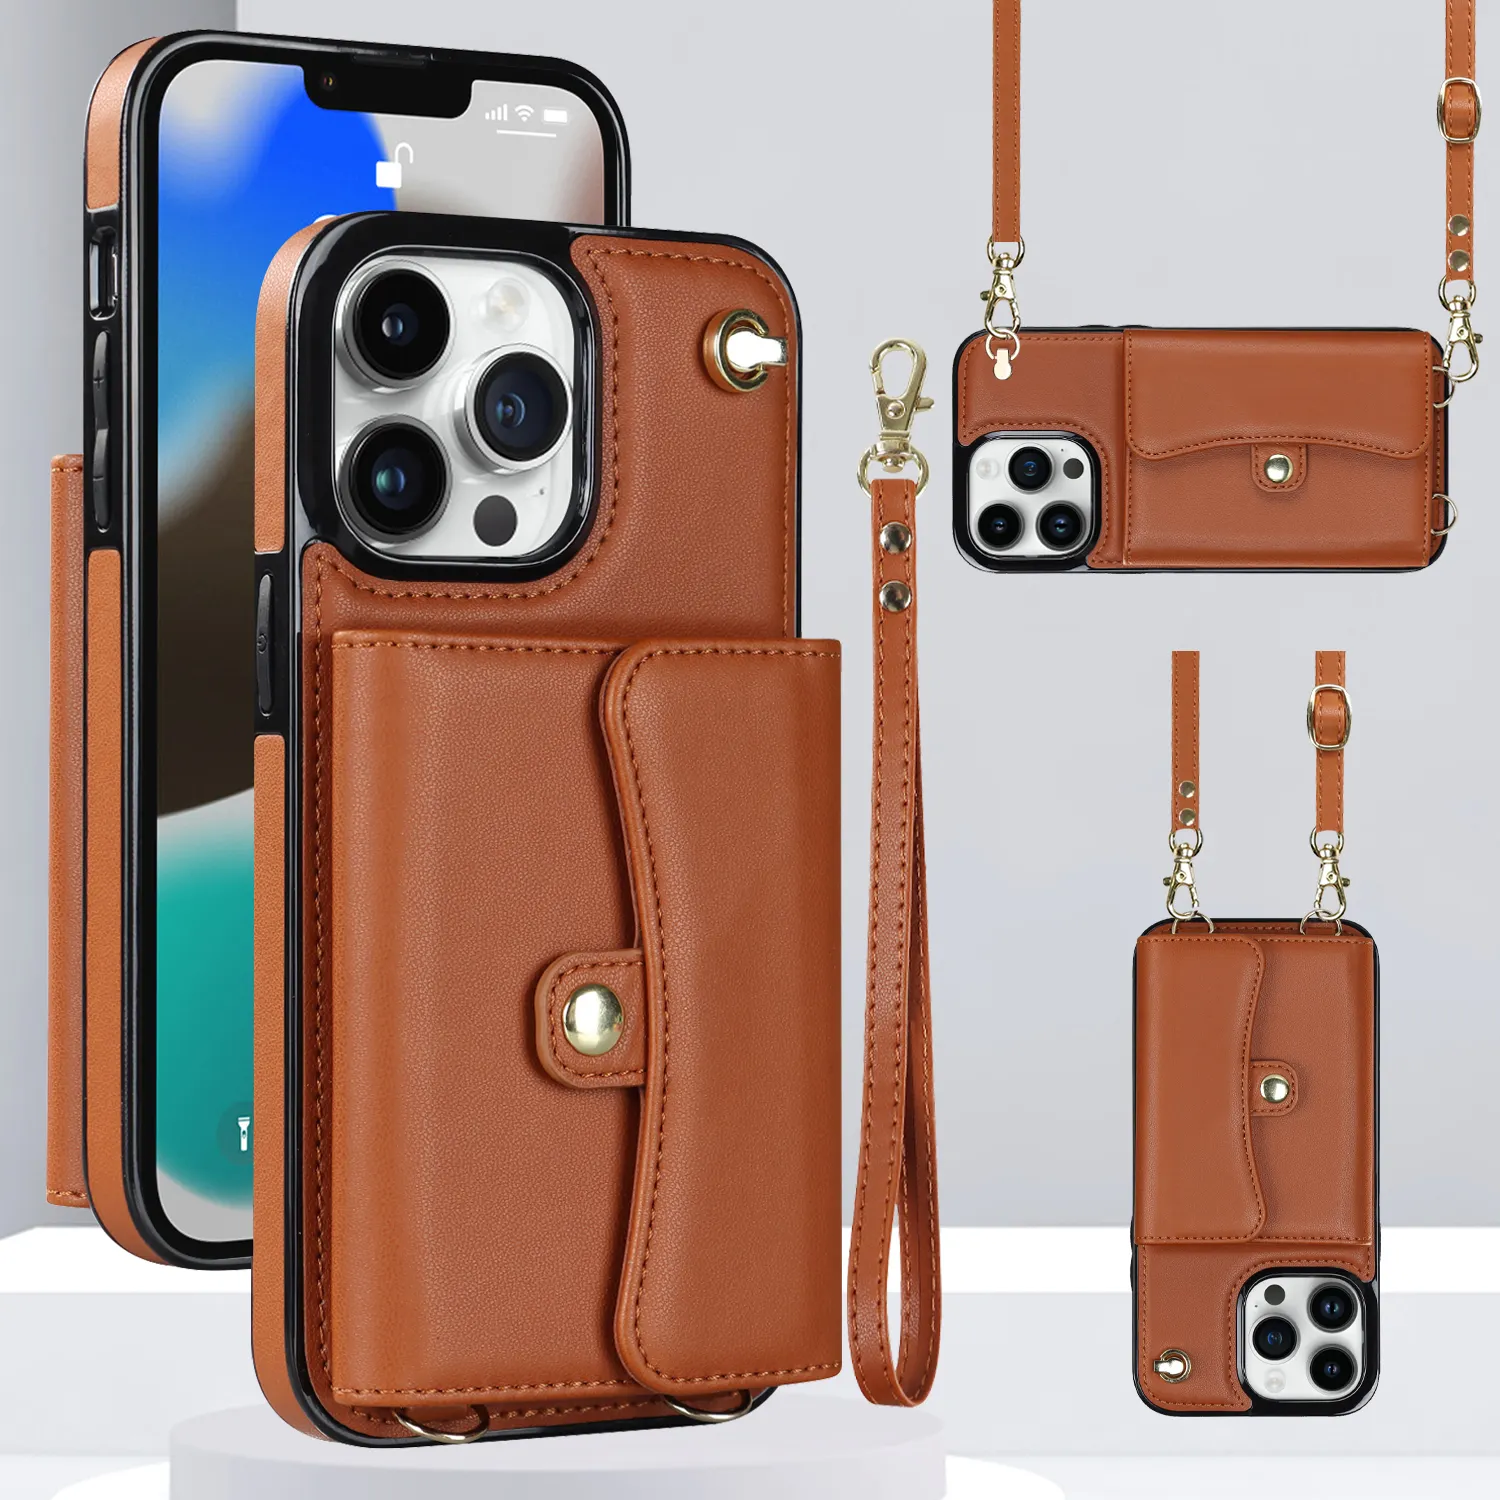 Luxus PU Leder Brieftasche Karten halter Cross body Handy tasche Abnehmbare Schulter gurt Handy hülle für iPhone und Samsung